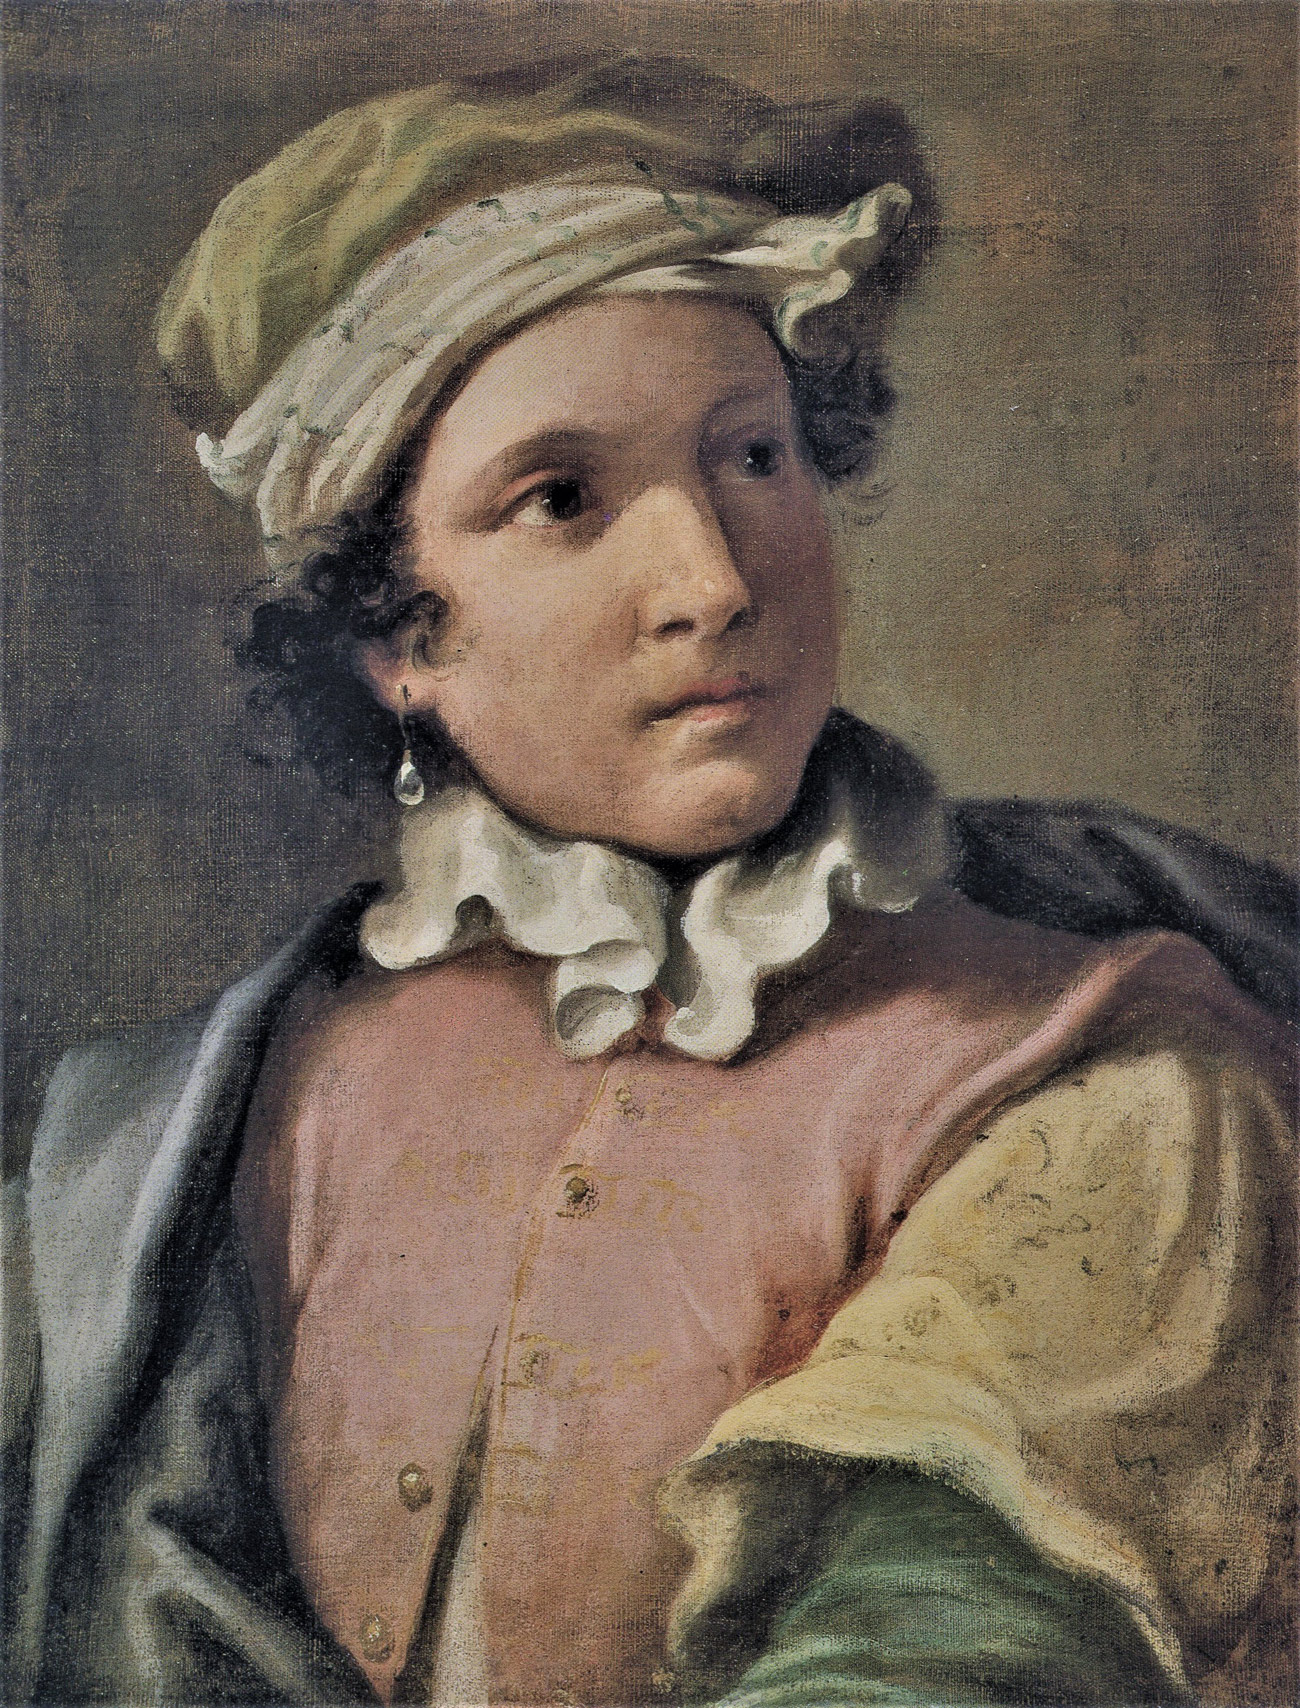 Lorenzo Pasinelli, Ritratto di fanciullo (1660-1670 circa; olio su tela, cm 67 x 52,5; Bremen, Kunsthalle) 